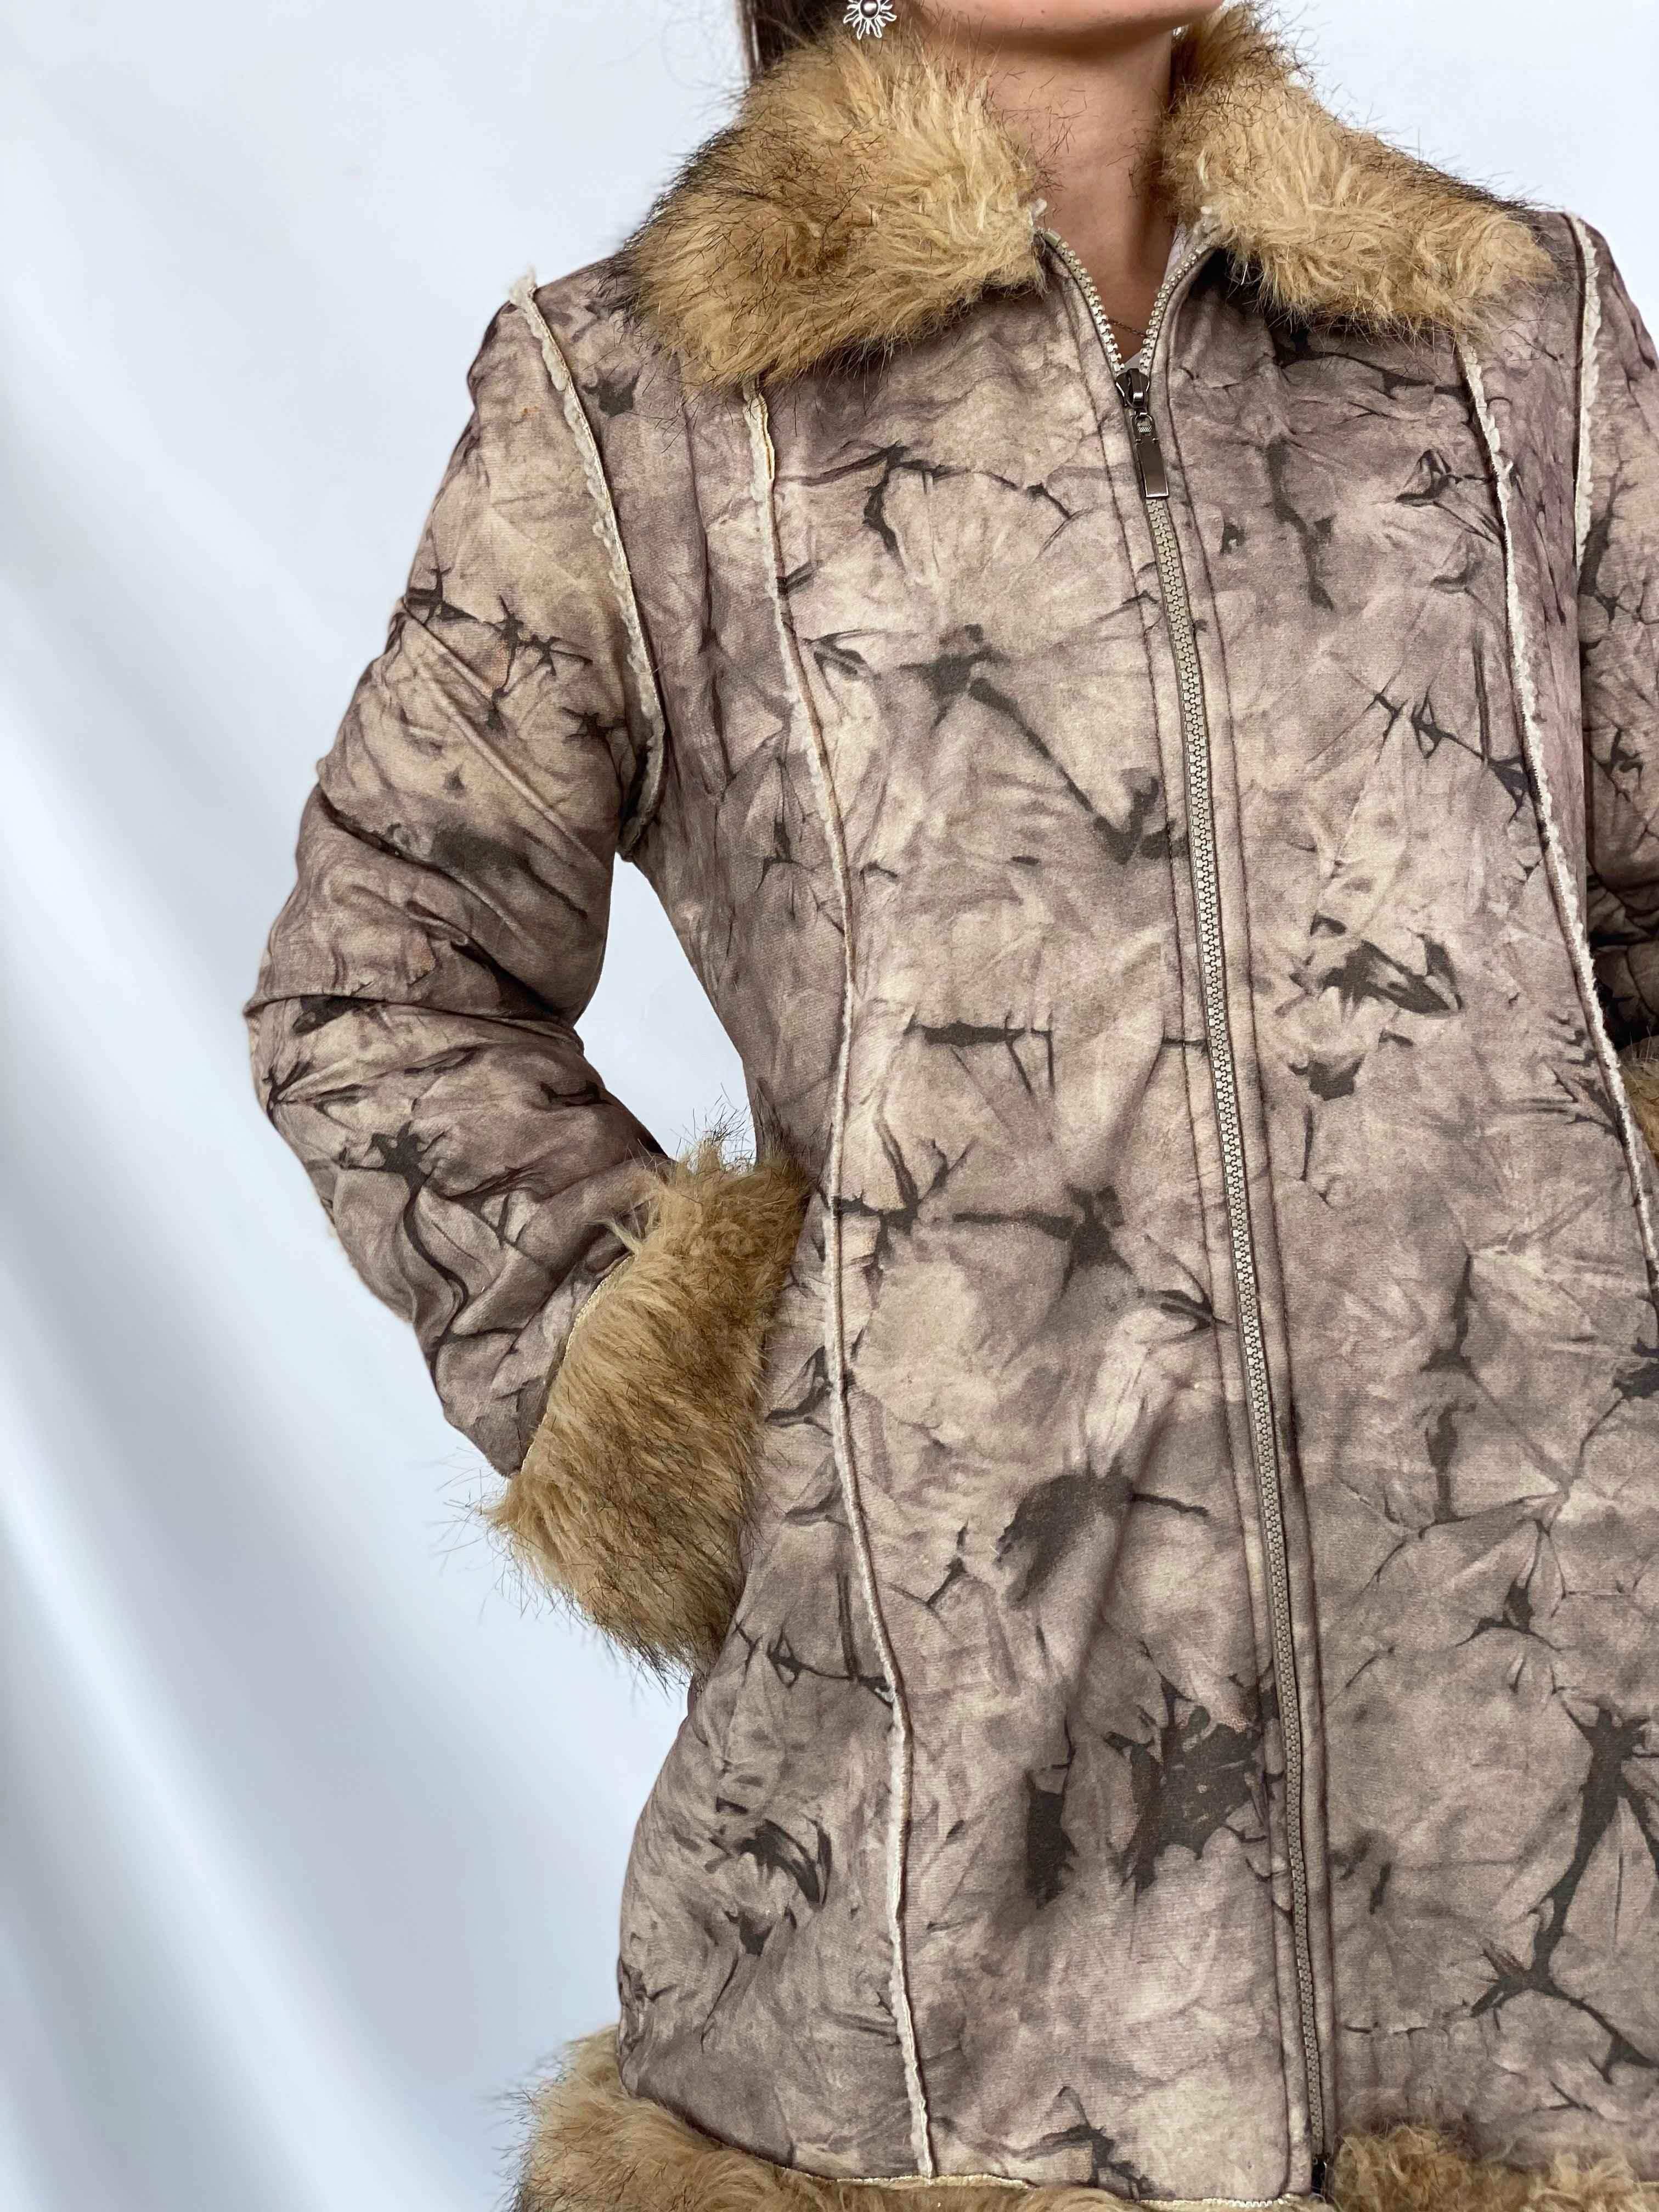 Vintage Fionella jacket - Balagan Vintage Coat fur jacket, jacket, vintage jacket, winter